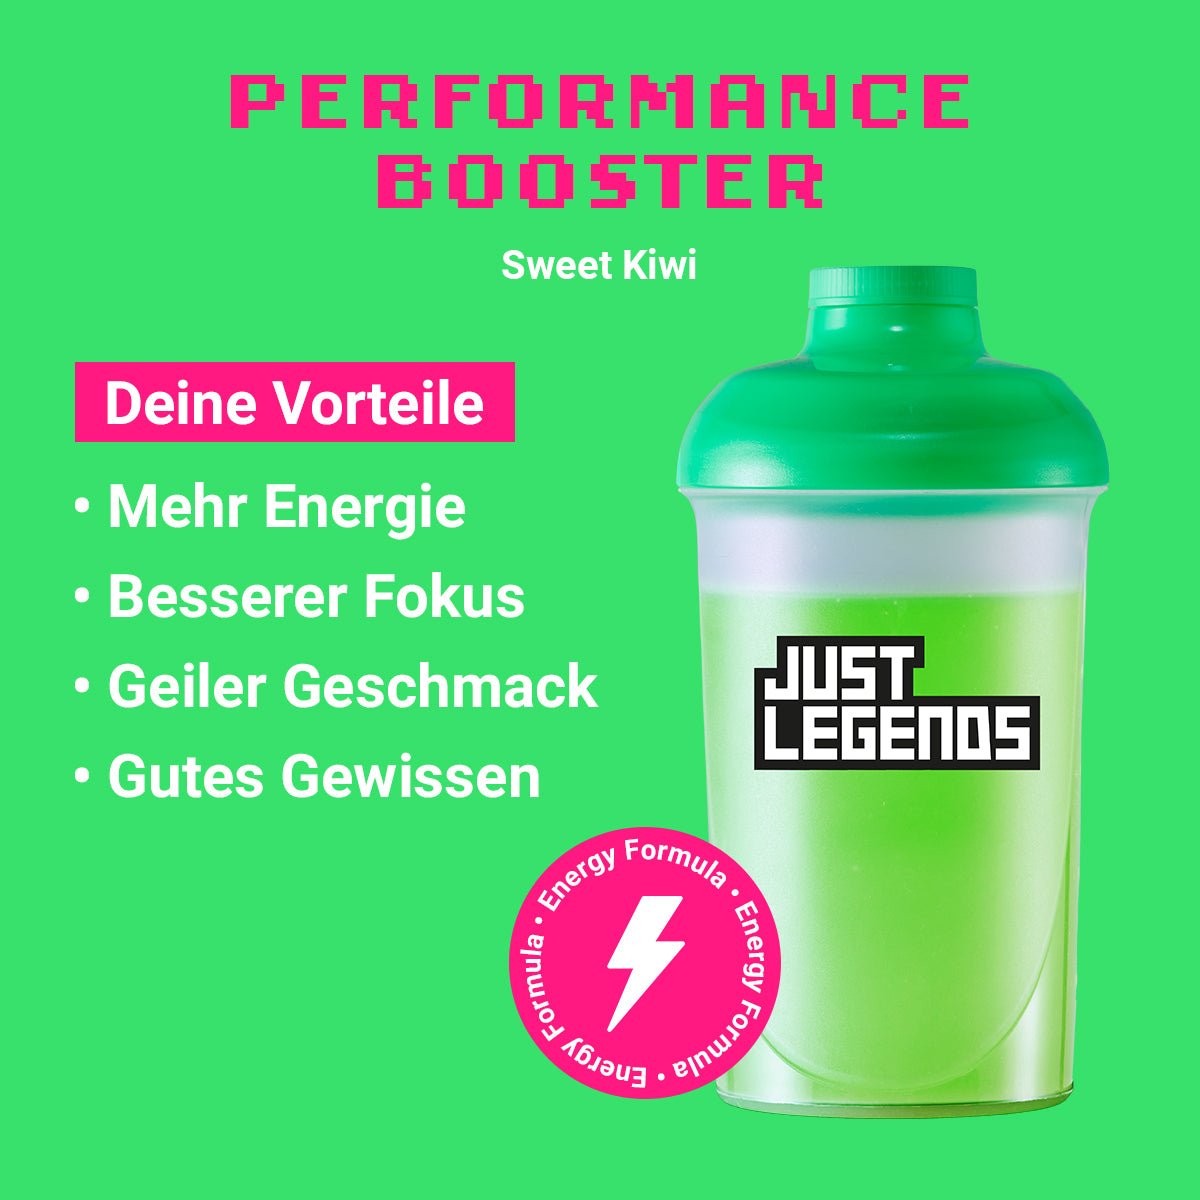 Just Legends Performance Booster Sweet Kiwi | Funktionaler, veganer Performance Booster auf Pulverbasis ohne Zucker, mit wenig Kalorien, vielen Vitaminen und natürlichen Aromen.